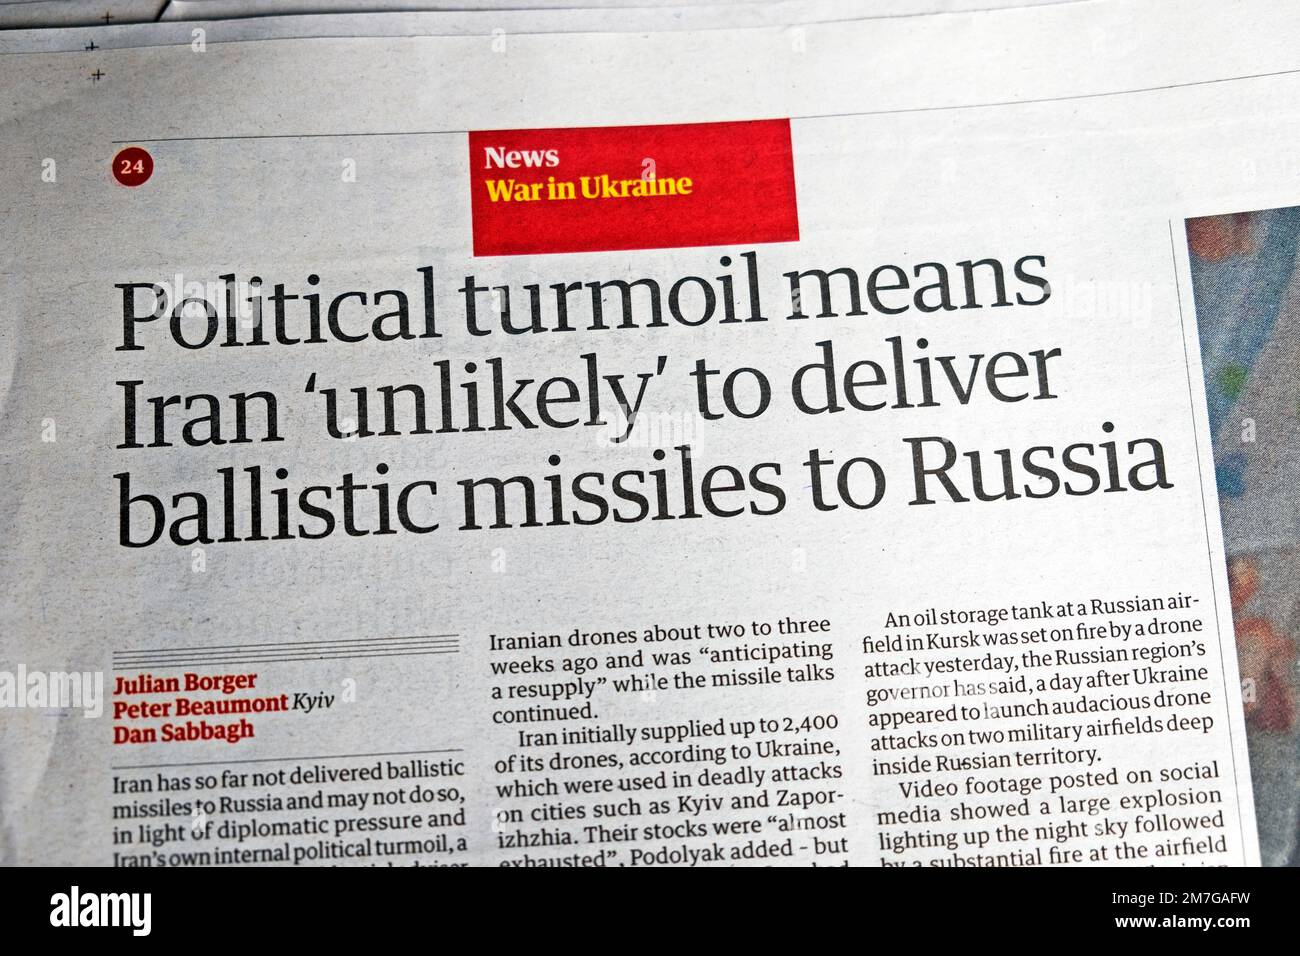 "Politische Turbulenzen bedeuten, dass der Iran wahrscheinlich keine ballistischen Raketen nach Russland liefern wird." "Guardian", Schlagzeile, Dezember 2022, London, Großbritannien. Stockfoto